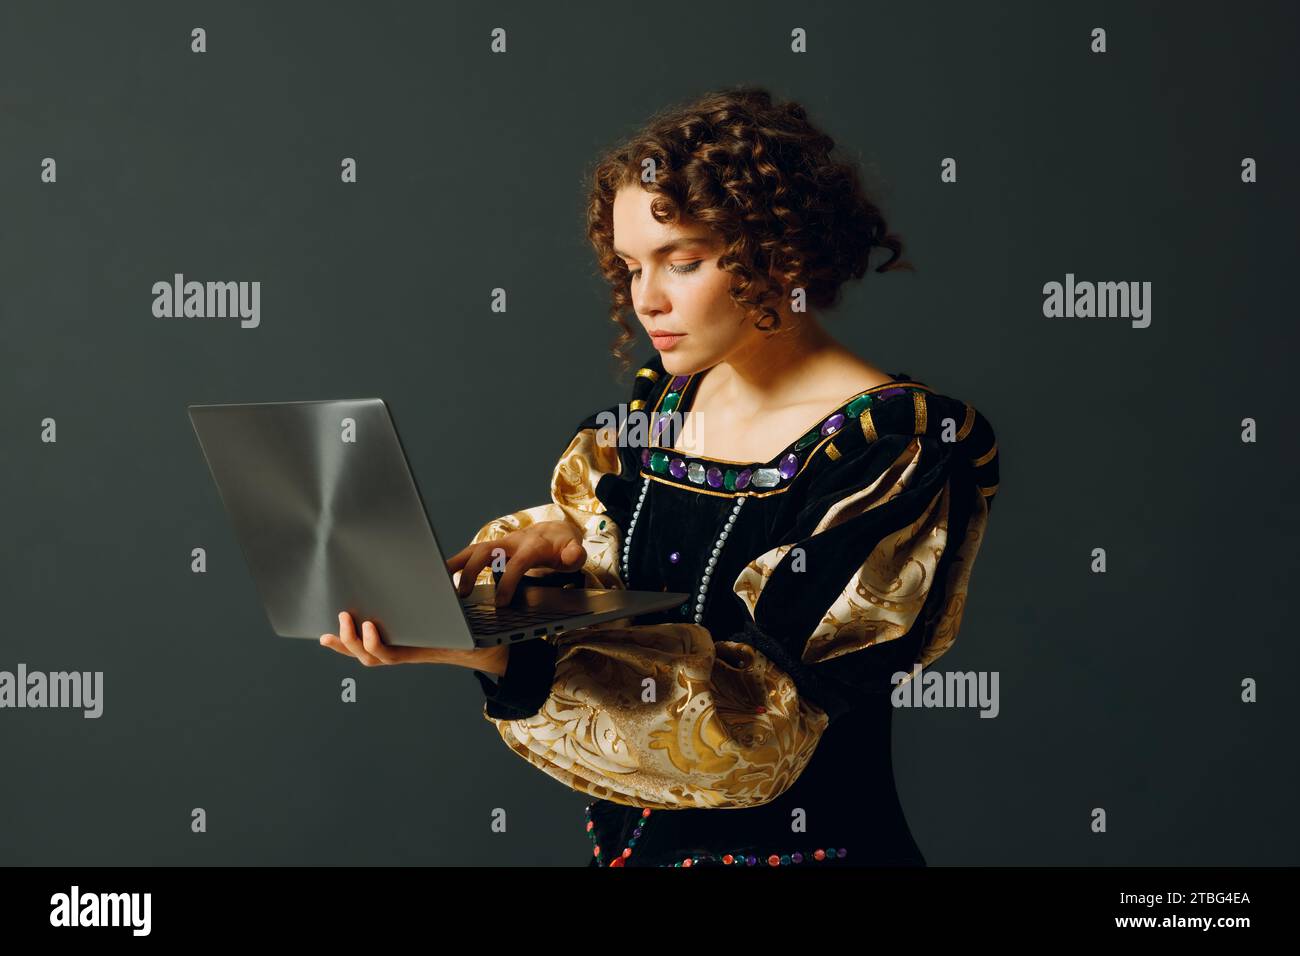 Porträt einer jungen Aristokratin in einem mittelalterlichen Kleid, die am Laptop arbeitet Stockfoto